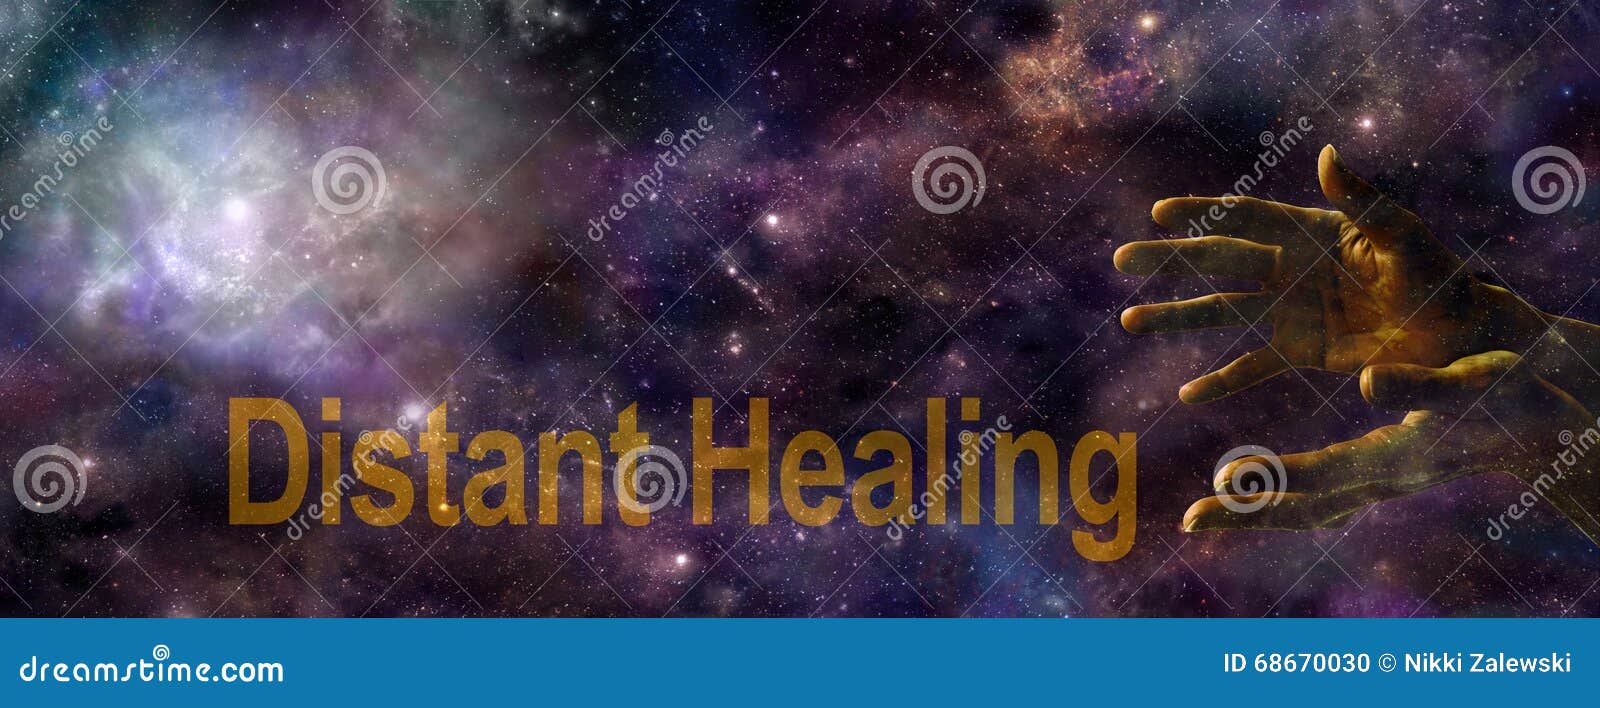 distant healing website banner